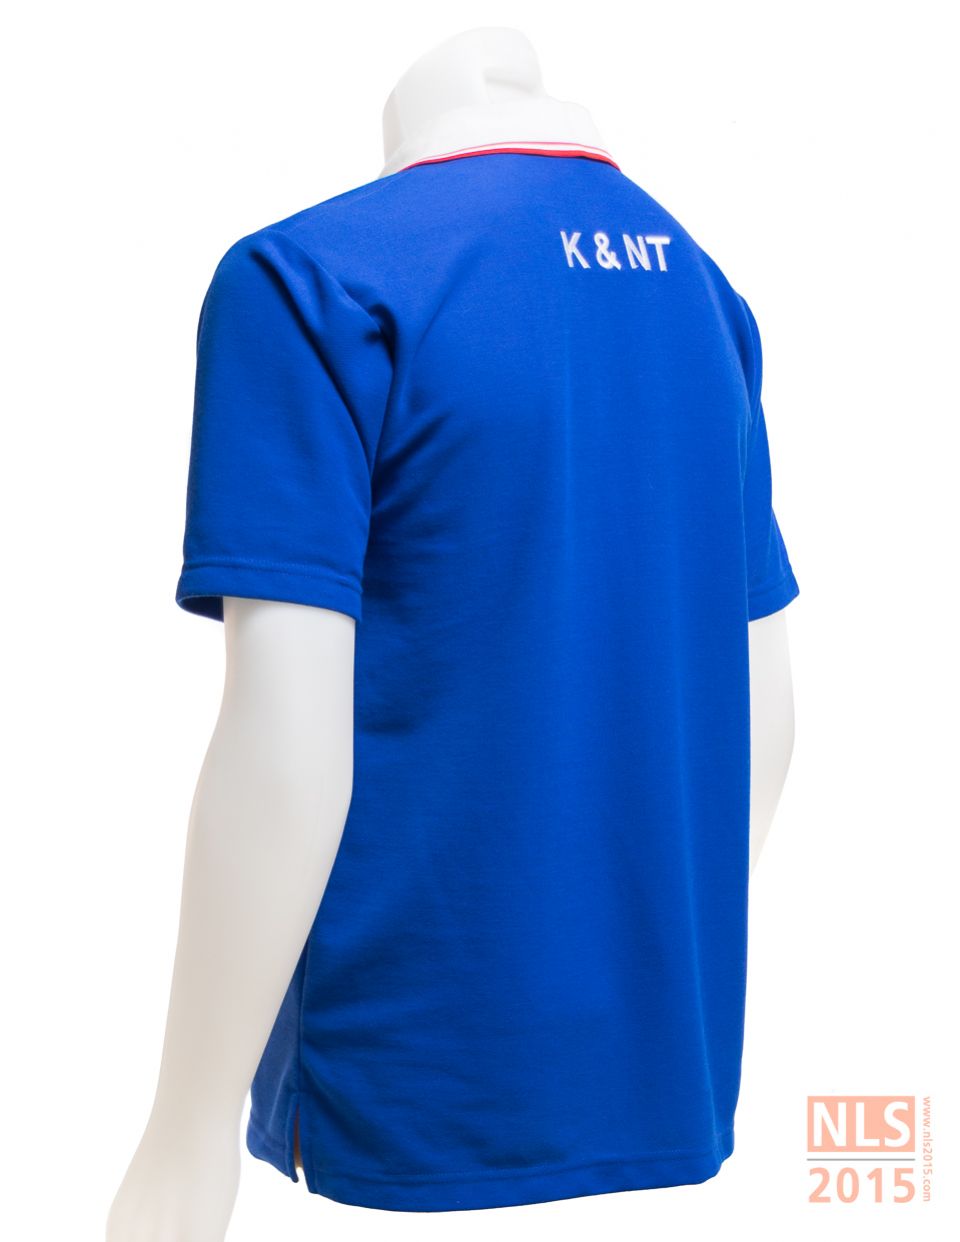 แบบเสื้อโปโล บริษัท K&NT Container - นลินสิริ รับตัดเสื้อโปโล ศรีราชารูปที่ 